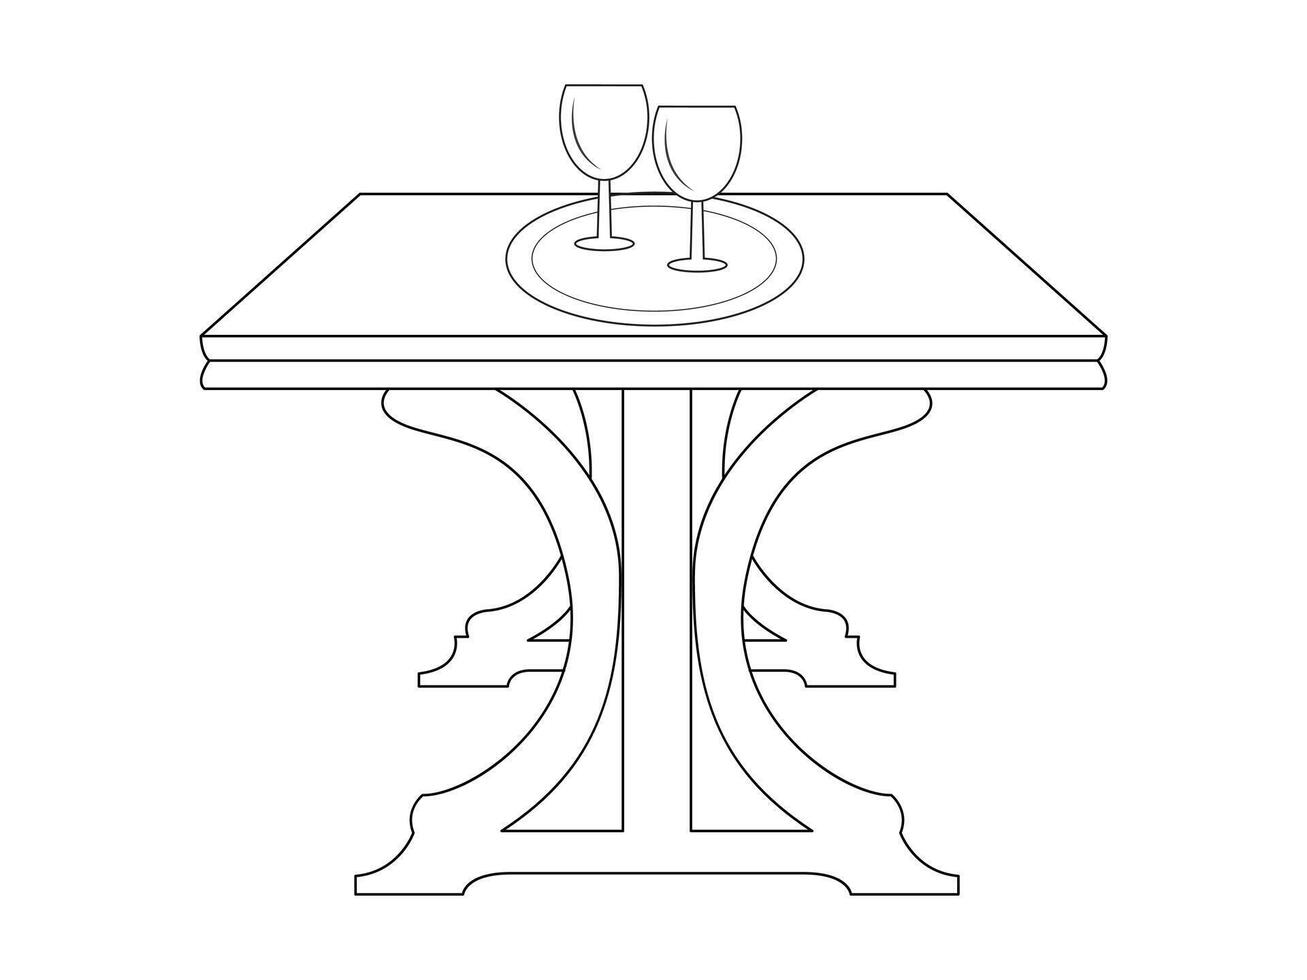 café et thé table avec verre et en bois tableau, tasse de chaud thé et thé feuille sur le en bois table et le thé plantations Contexte vecteur